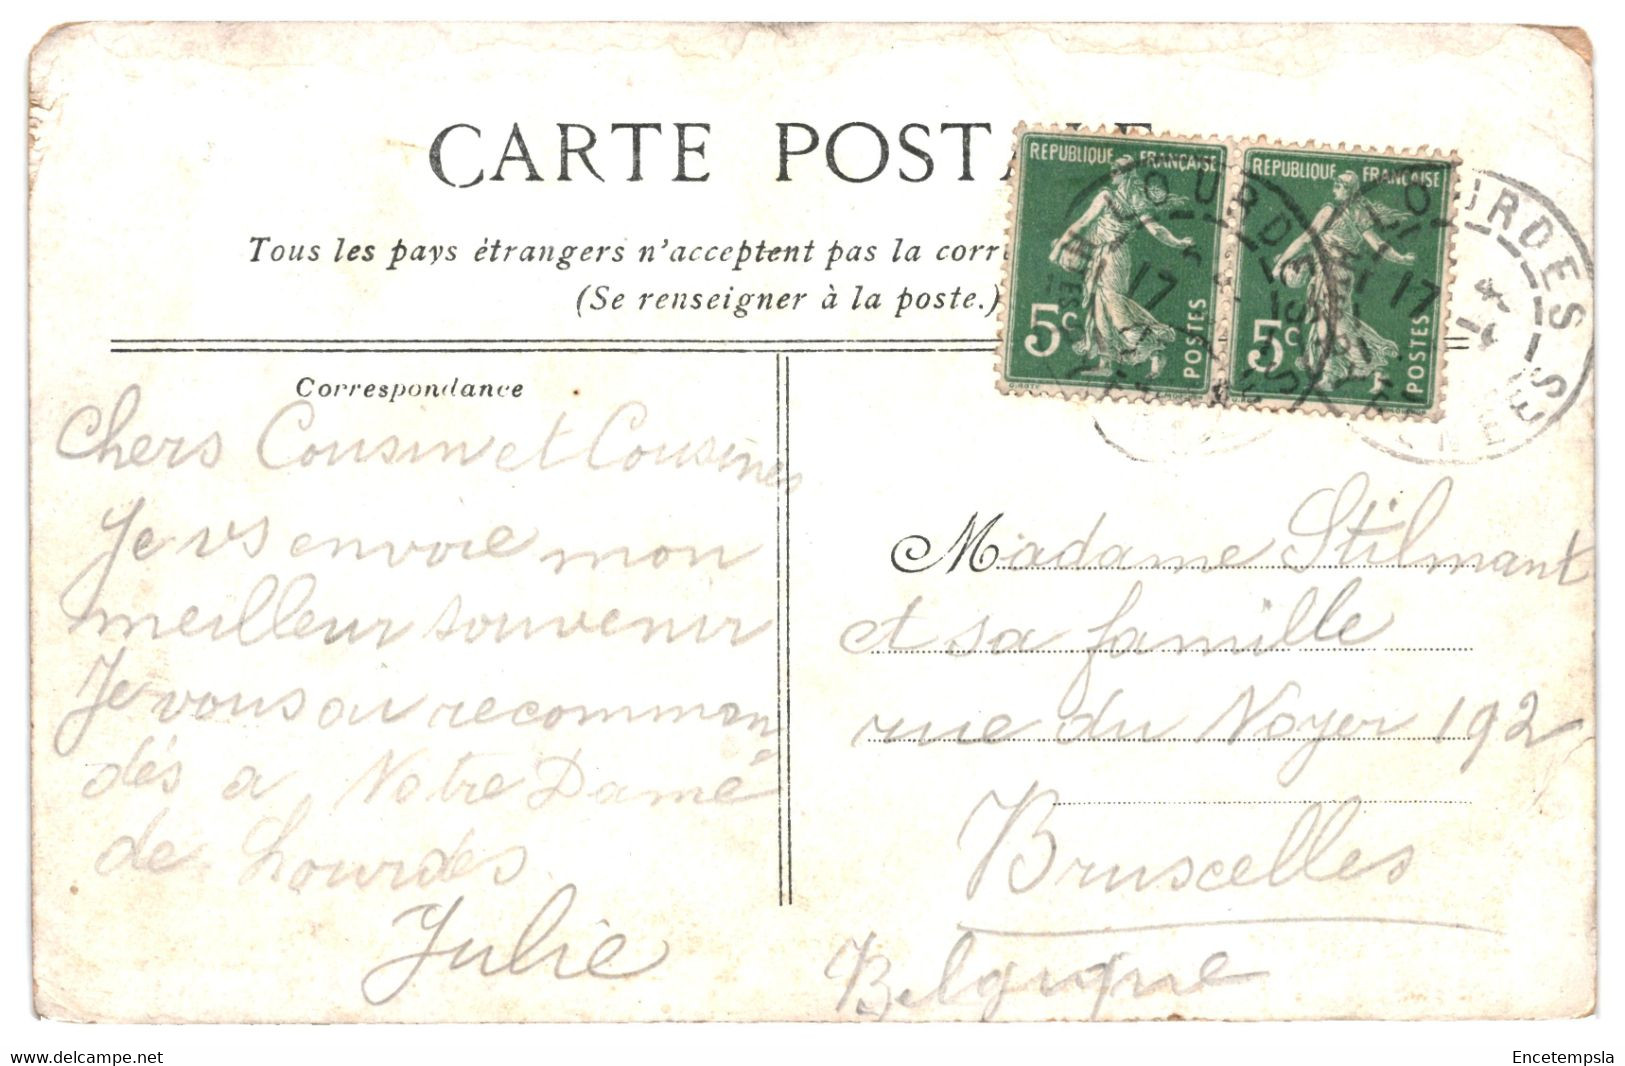 CPA - Carte postale - Lot de 50  cartes postales de France- Lourdes  - VMloud-2